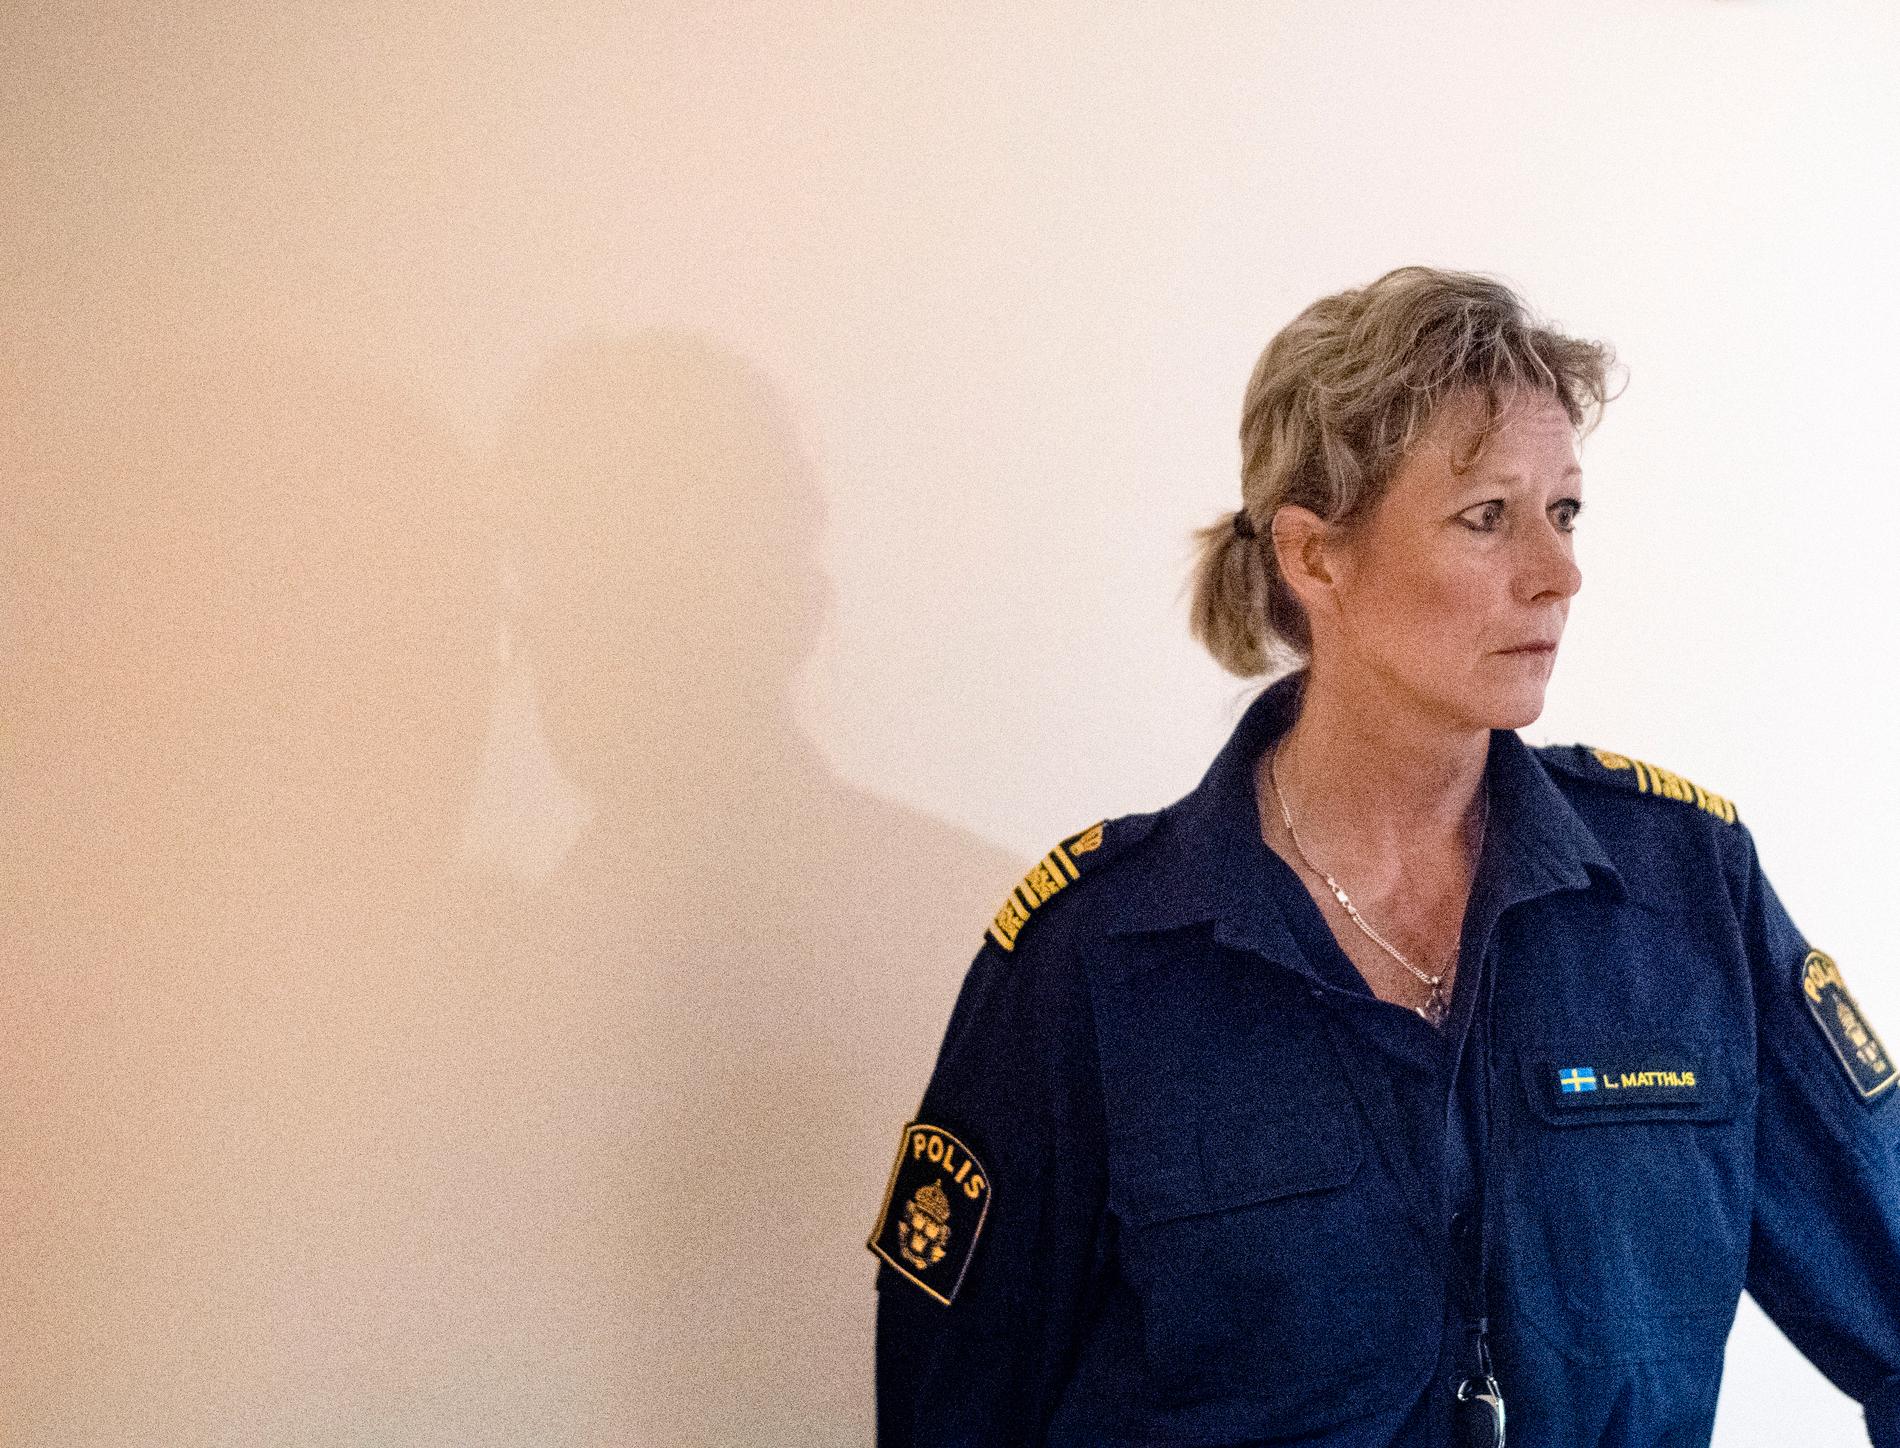 Det är uteslutet att det skulle ha varit någon annan eller att det skulle ha varit flera gärningsmän, säger Lena Matthijs, polisområdeschef i Älvsborg.